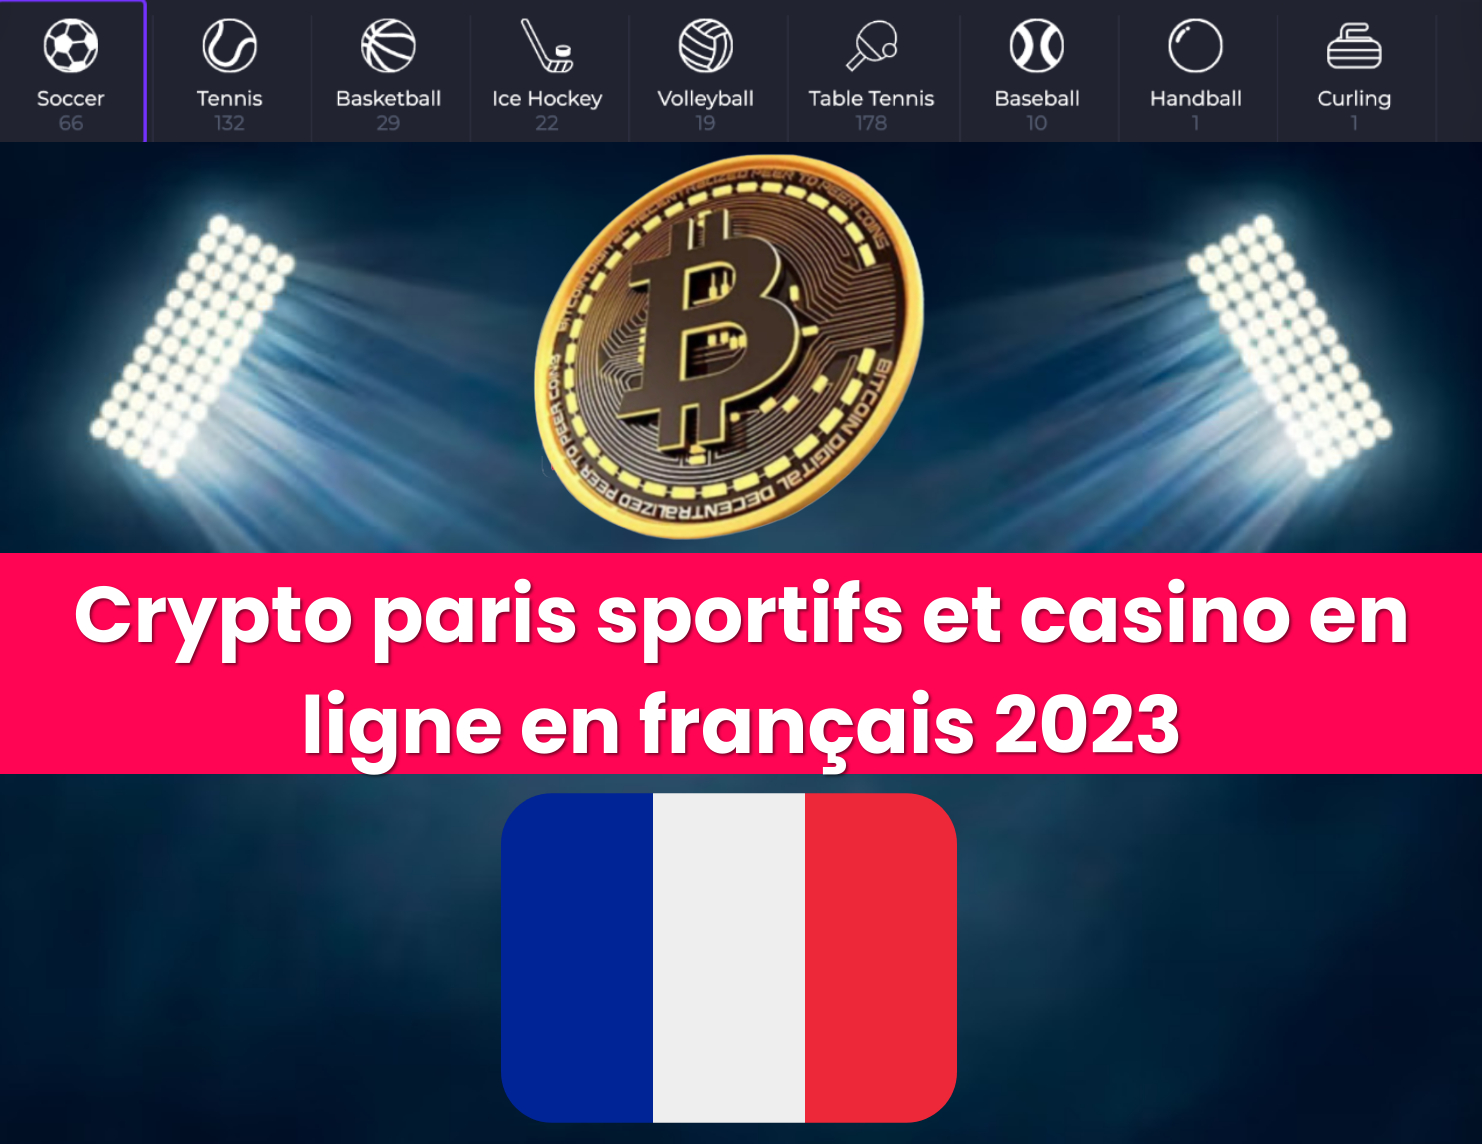 Crypto paris sportifs et casino en ligne en français 2023